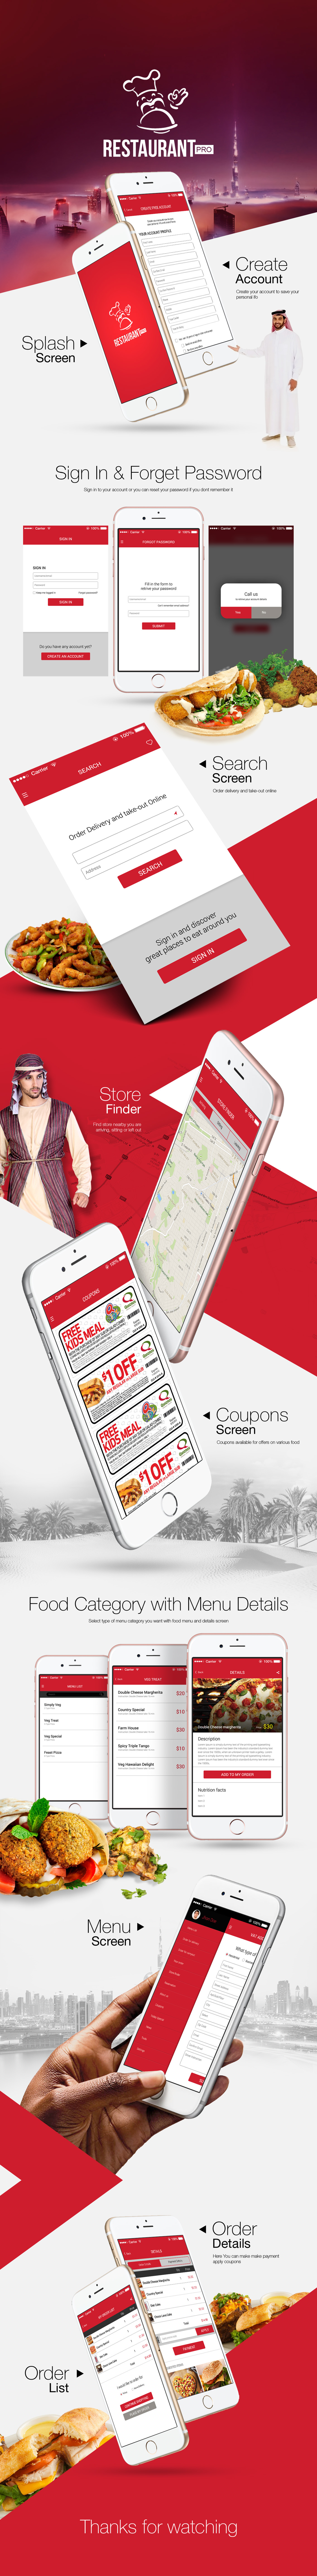 restaurant app mobile dubai Food  menu Order' delivery online